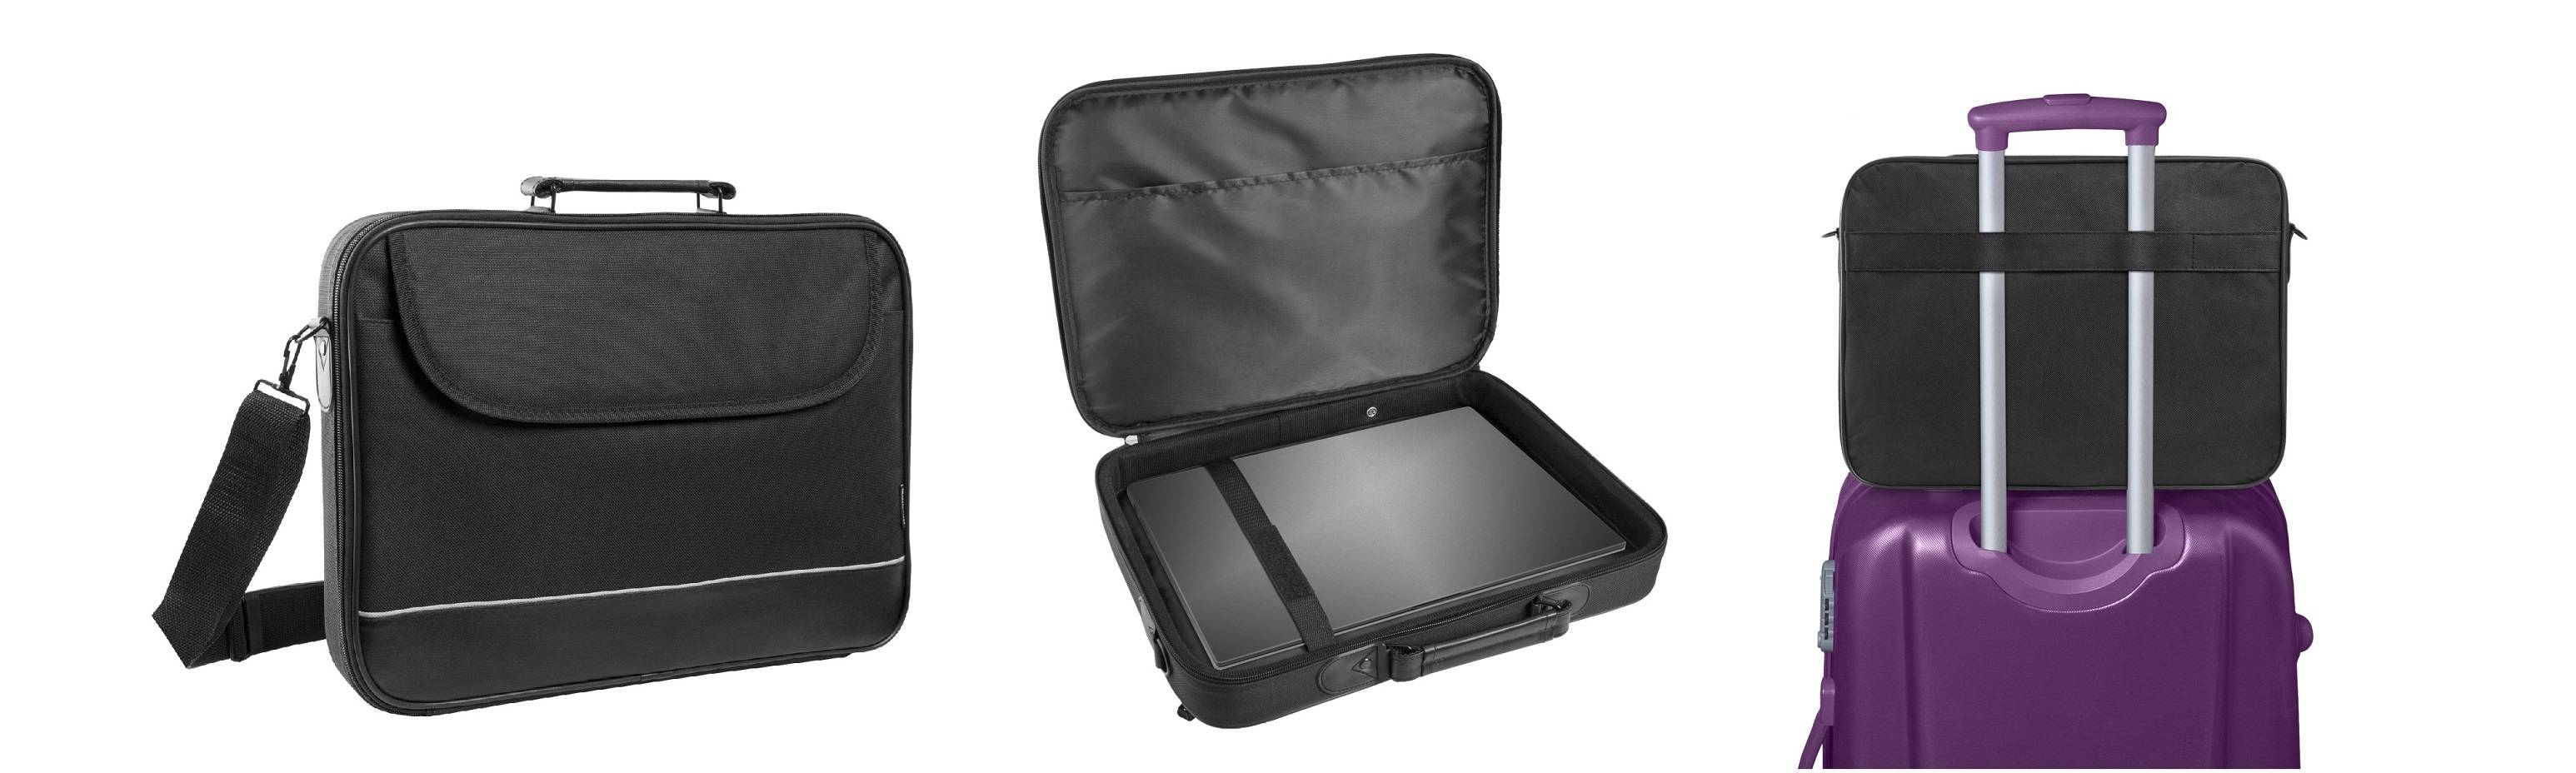 Сумка для ноутбука Defender Ascetic 15″-16″ черный, жесткий каркас, усиленная защита, карман, полиэстер.